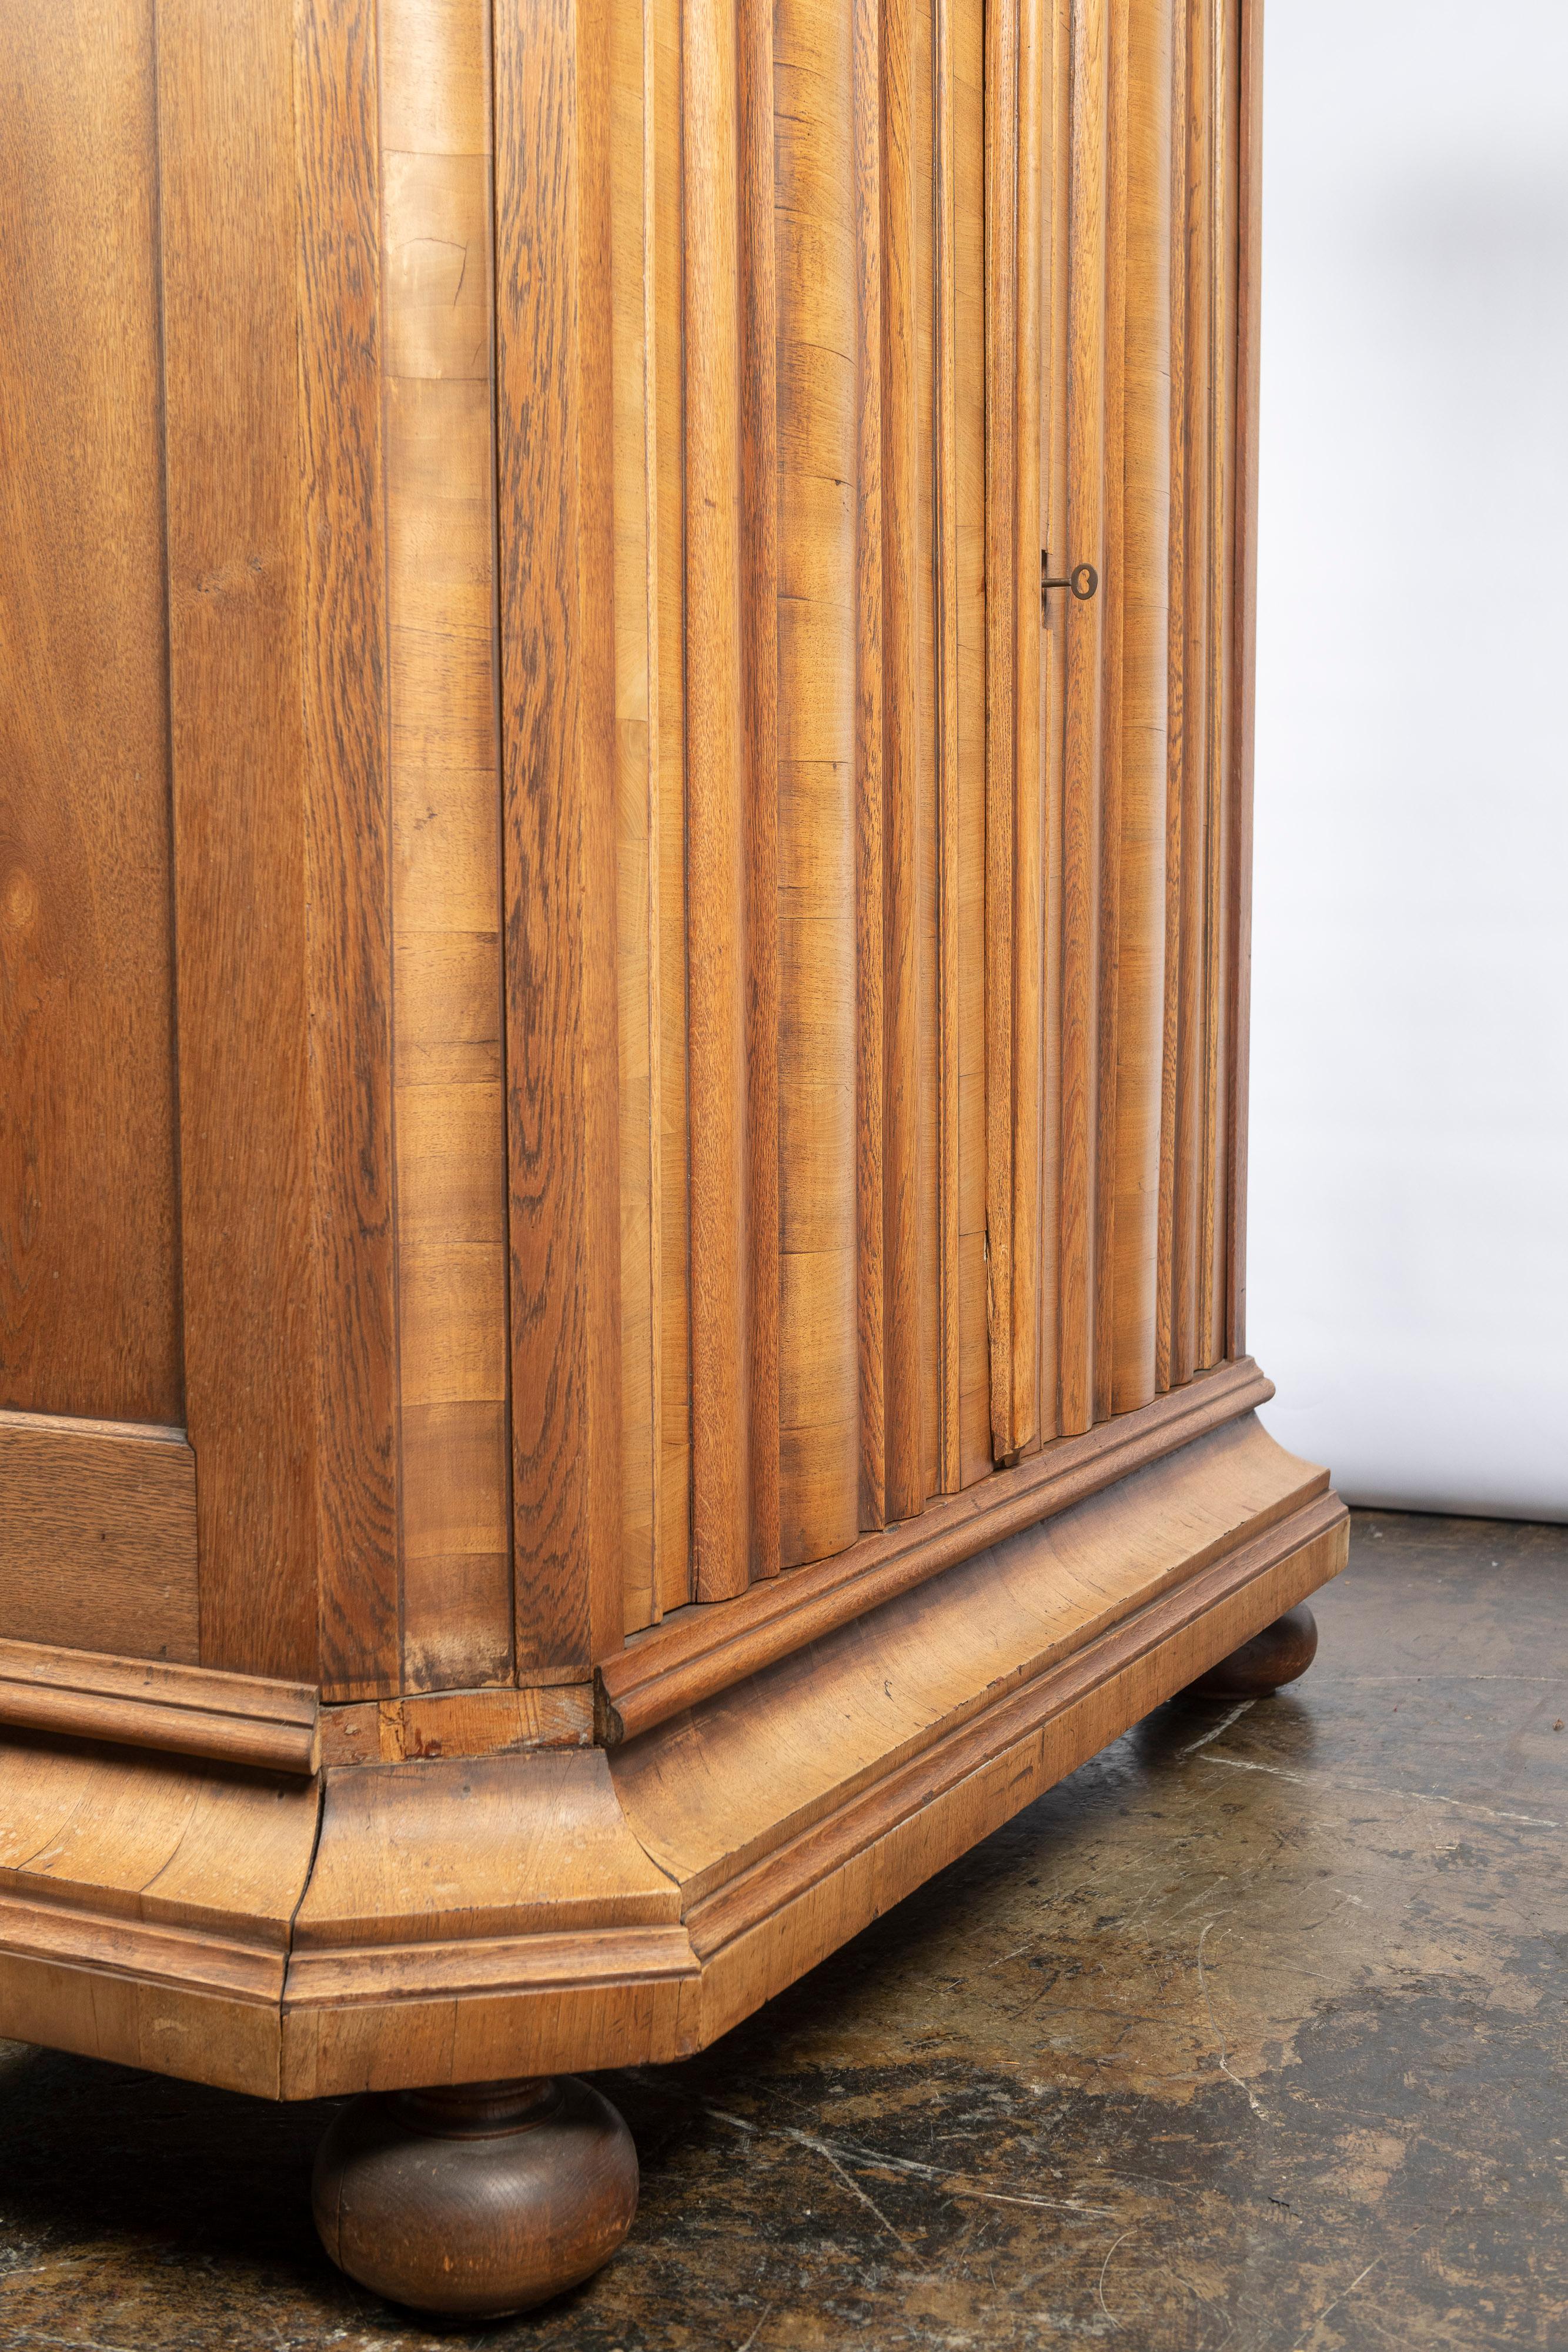 English Antique Oak Wardrobe with Corrugated Wood Doors, Shelves and Key 1